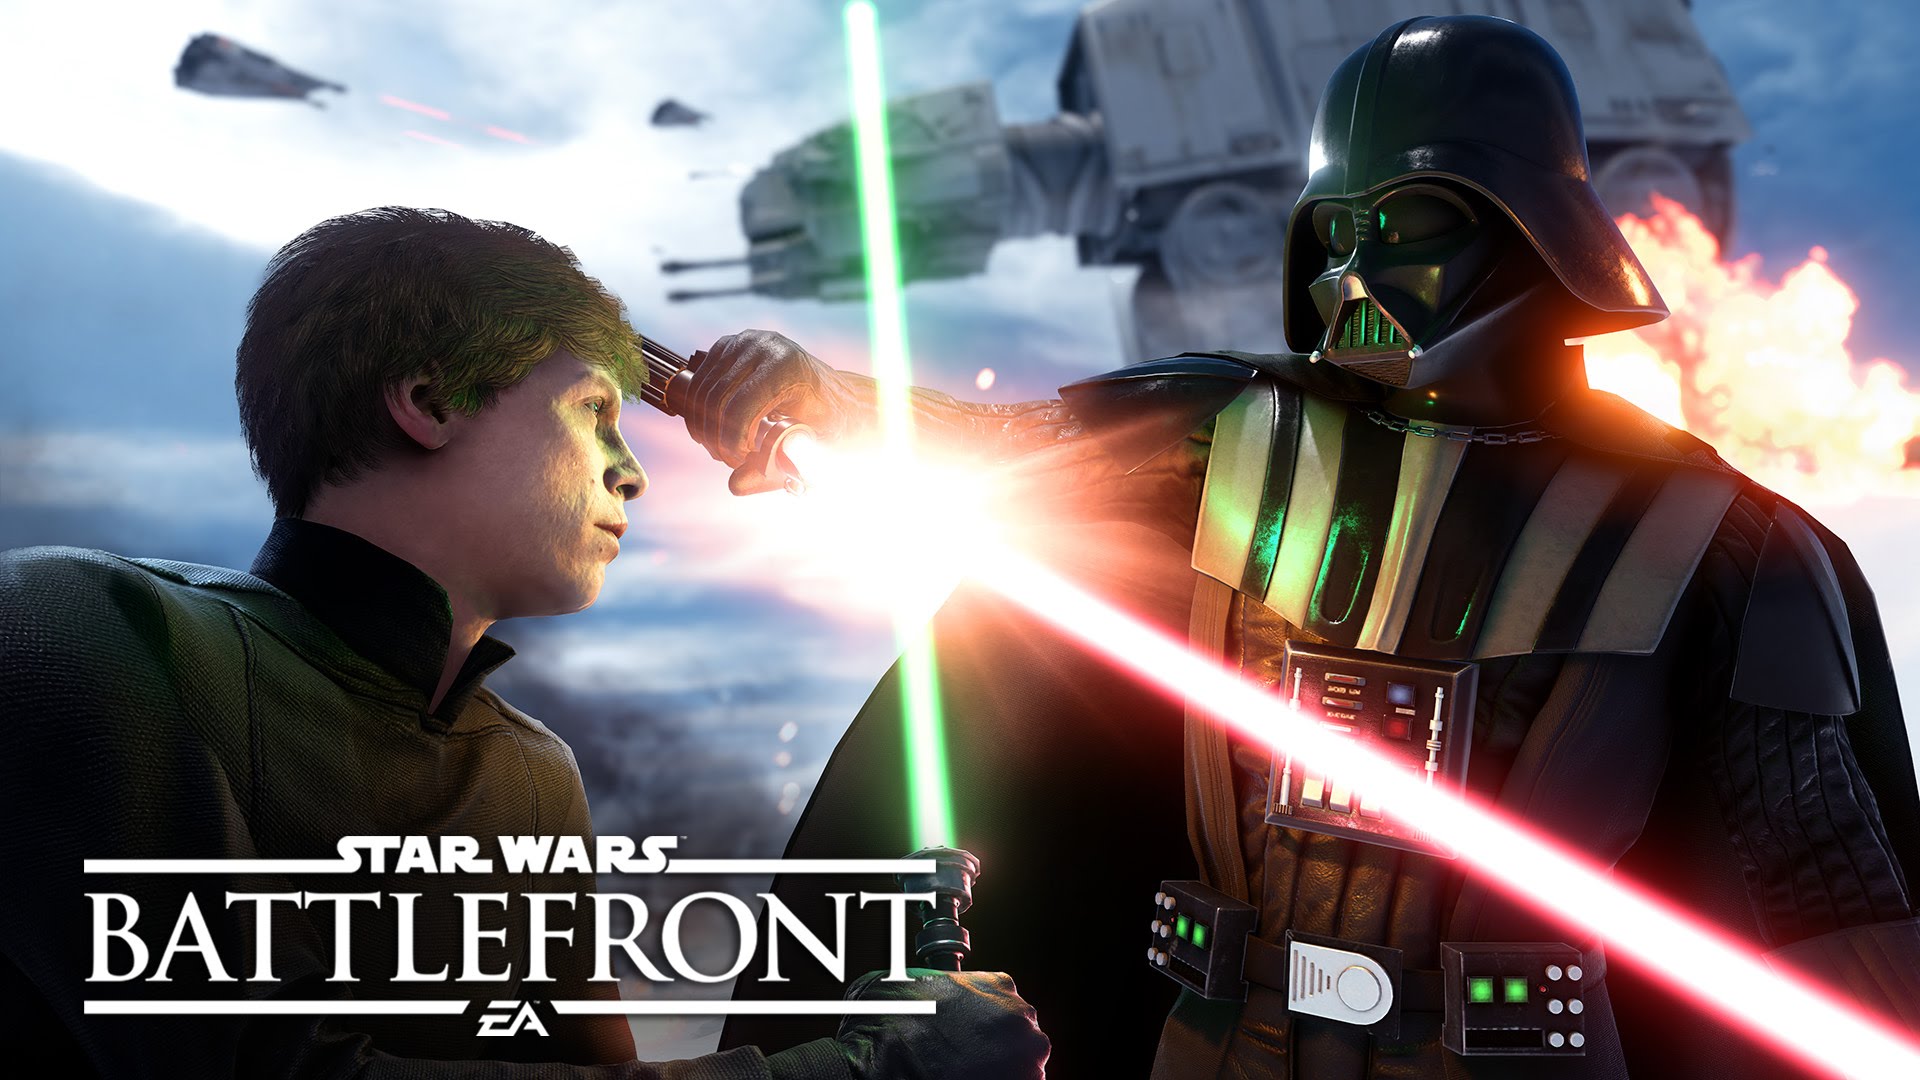 Ps4 Star Wars Battlefront Trailer